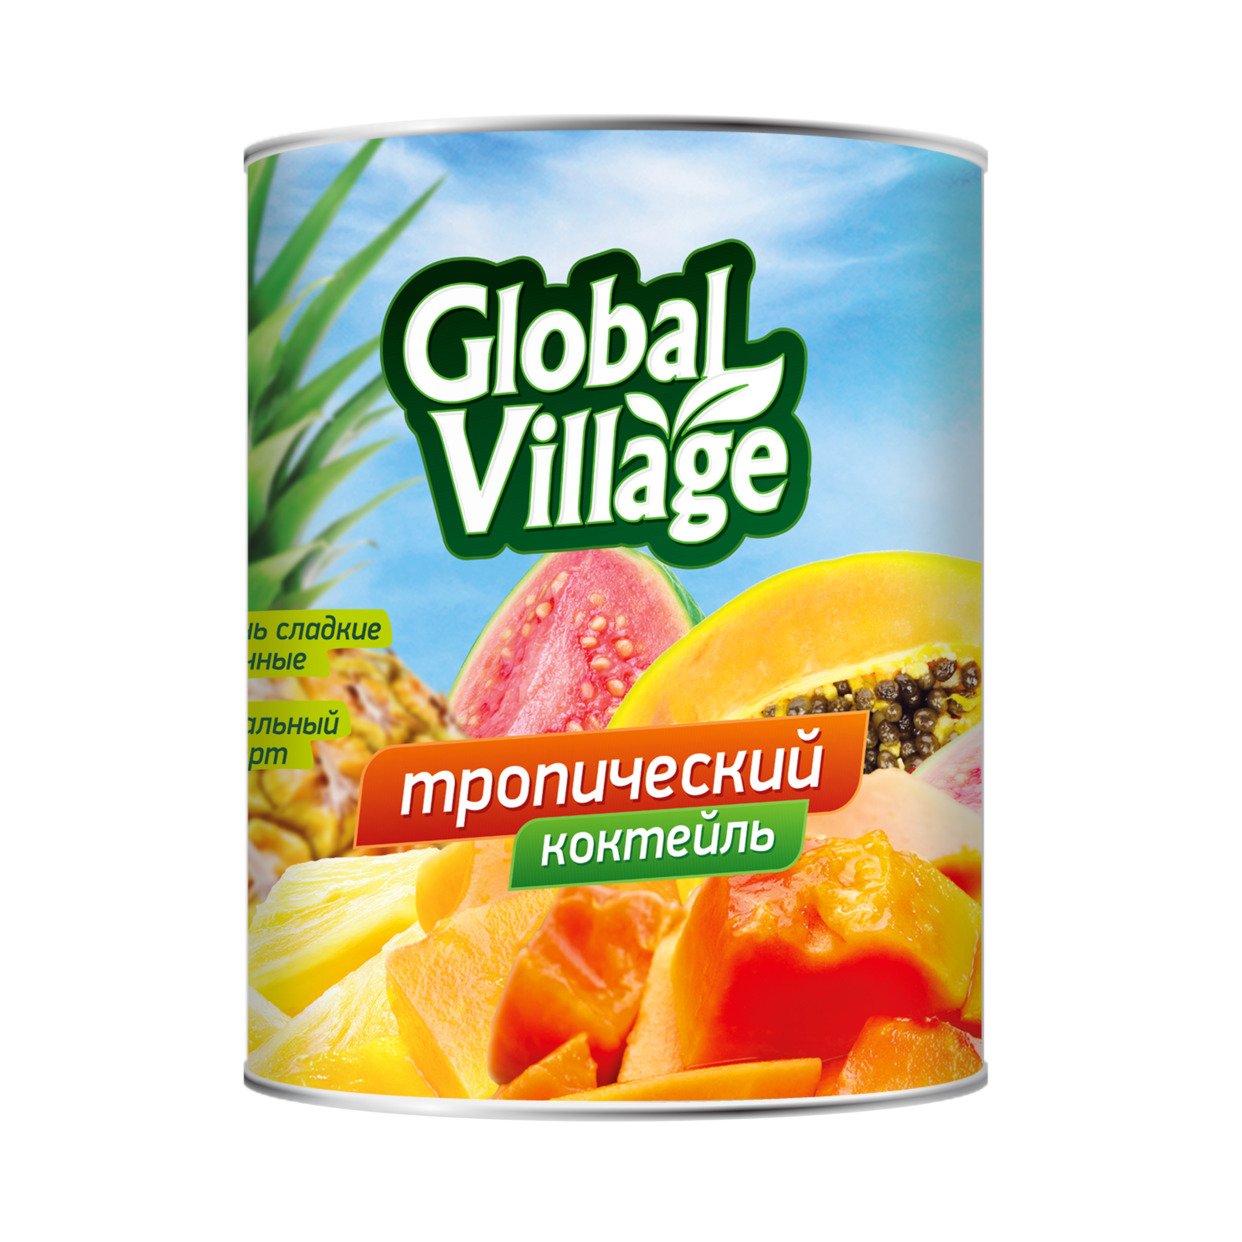 Консервы фруктовые пастеризованные: «Коктейль тропический» в легком сиропе, торговой марки «Global Village», 565г по акции в Пятерочке